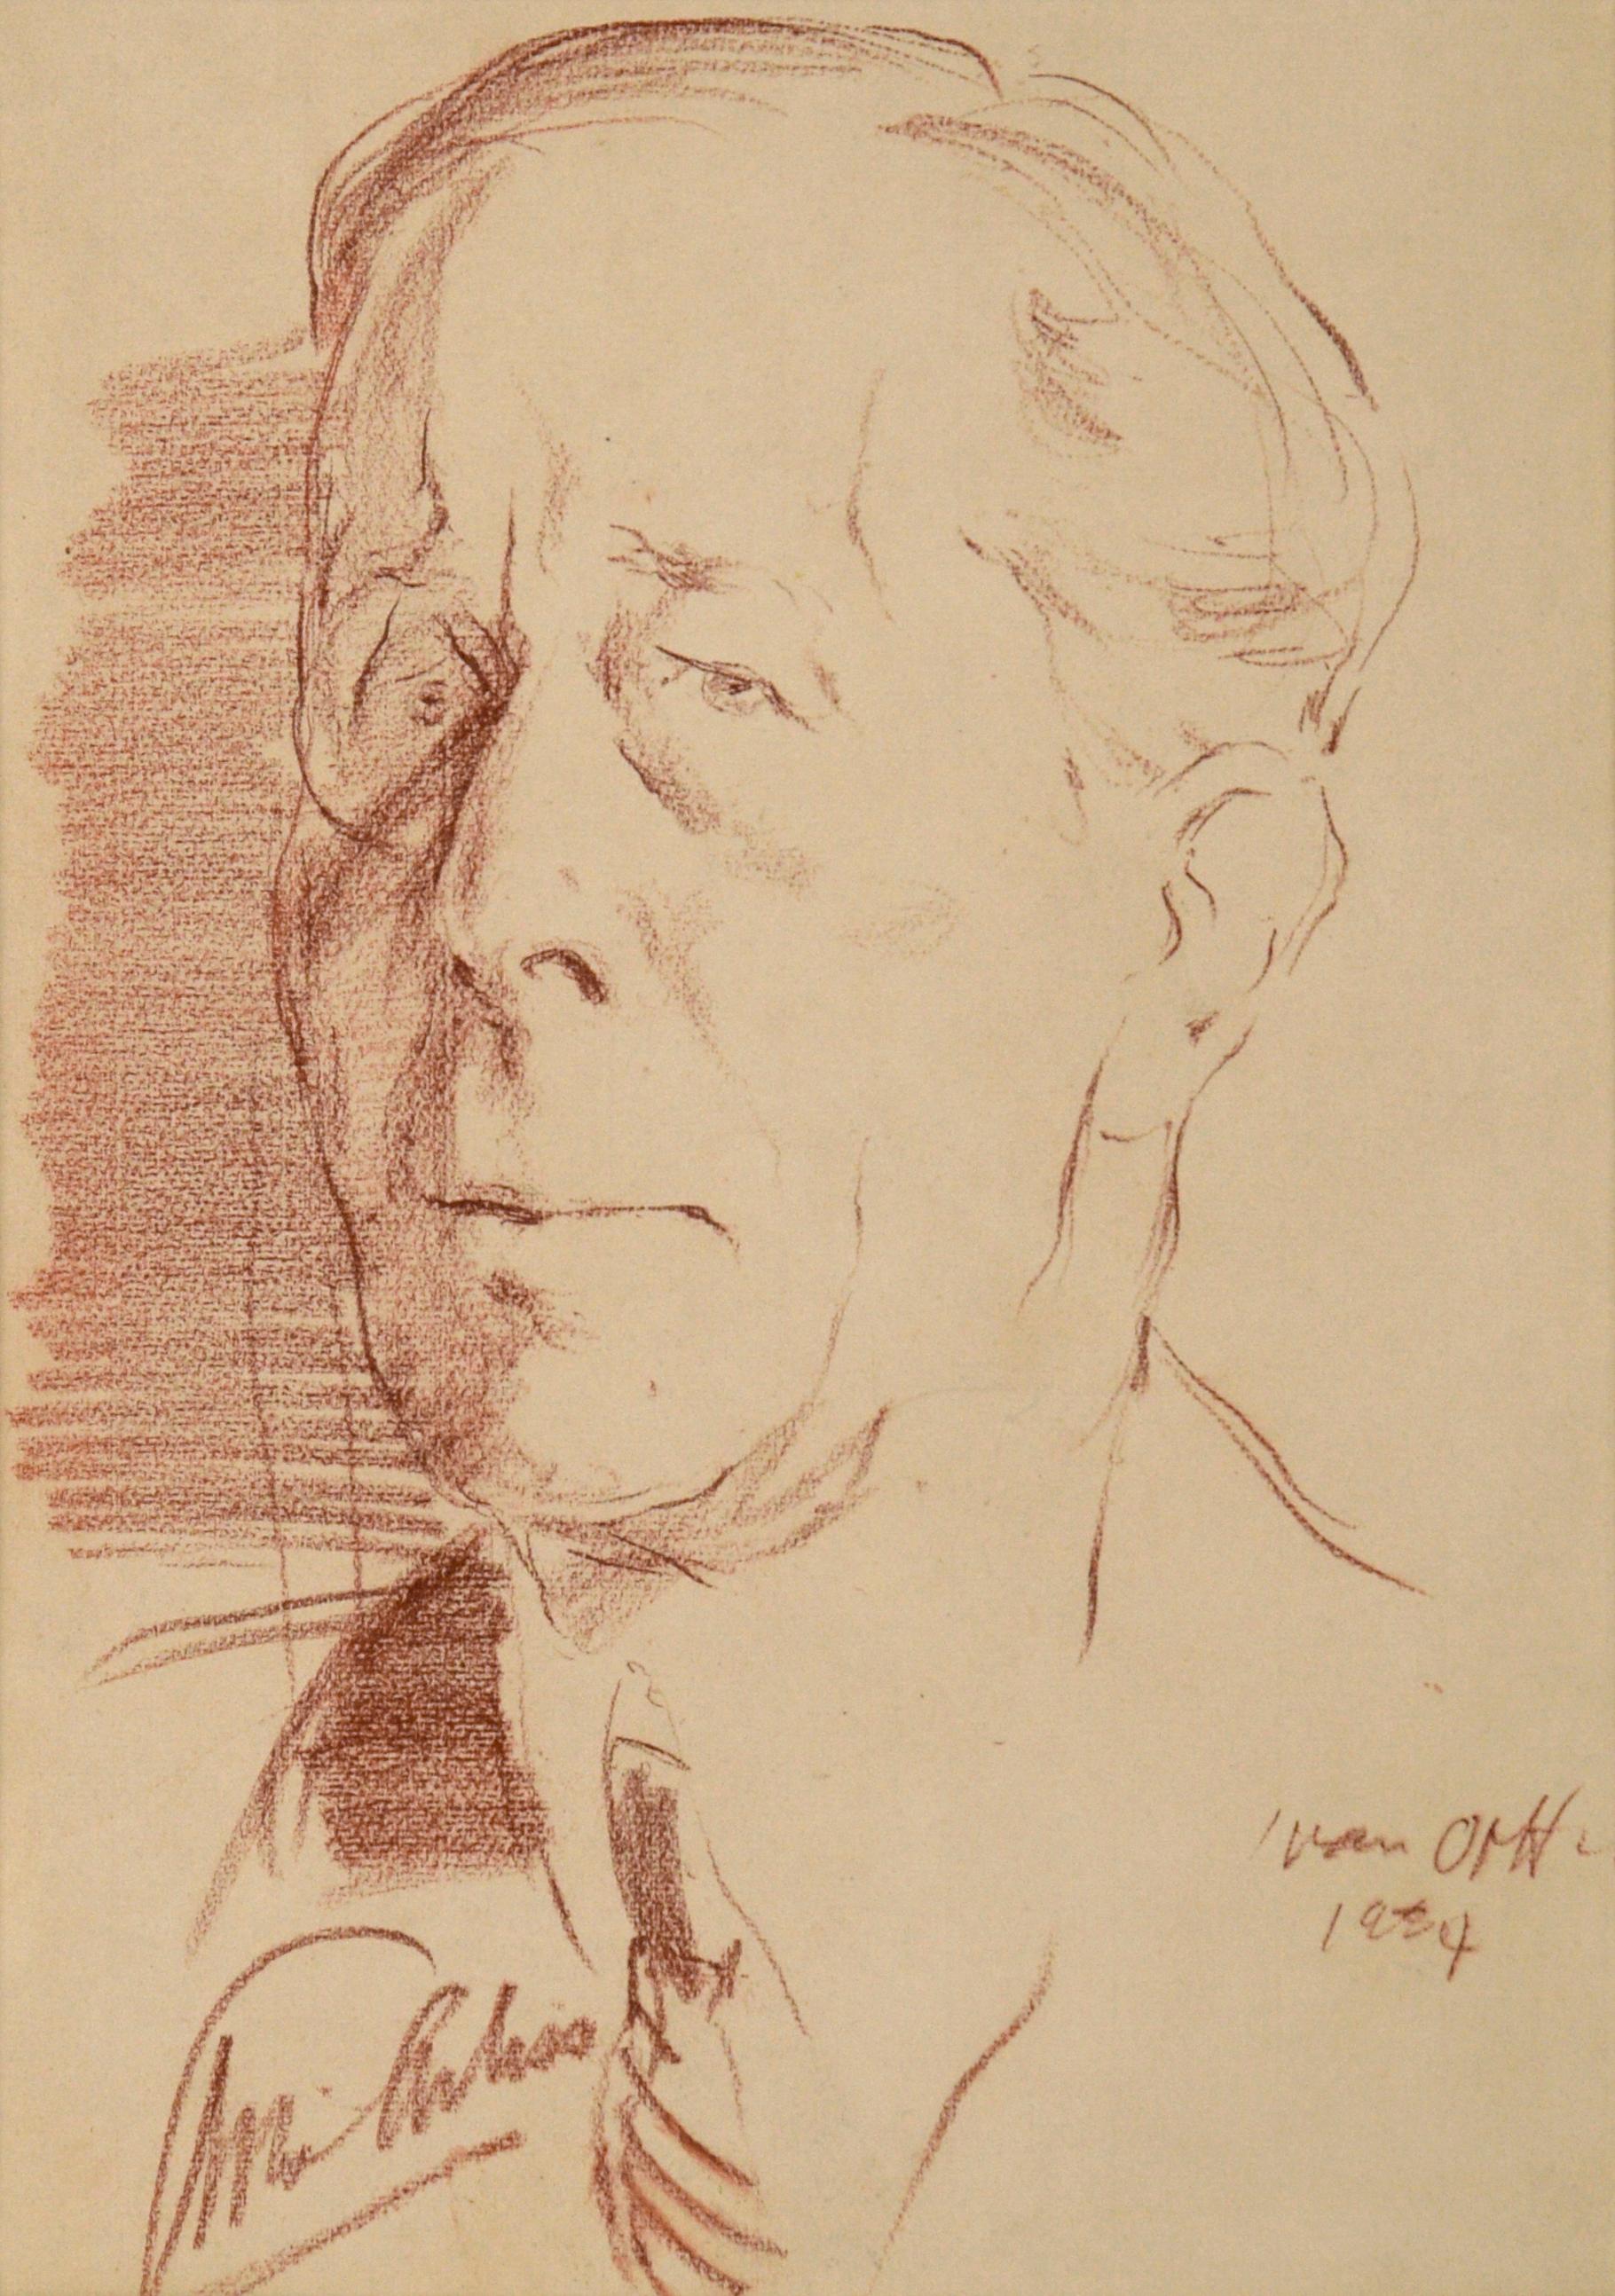 Porträt von George Arliss in Conte Crayon auf Cardstock, 1934 – Art von Ivan Opffer